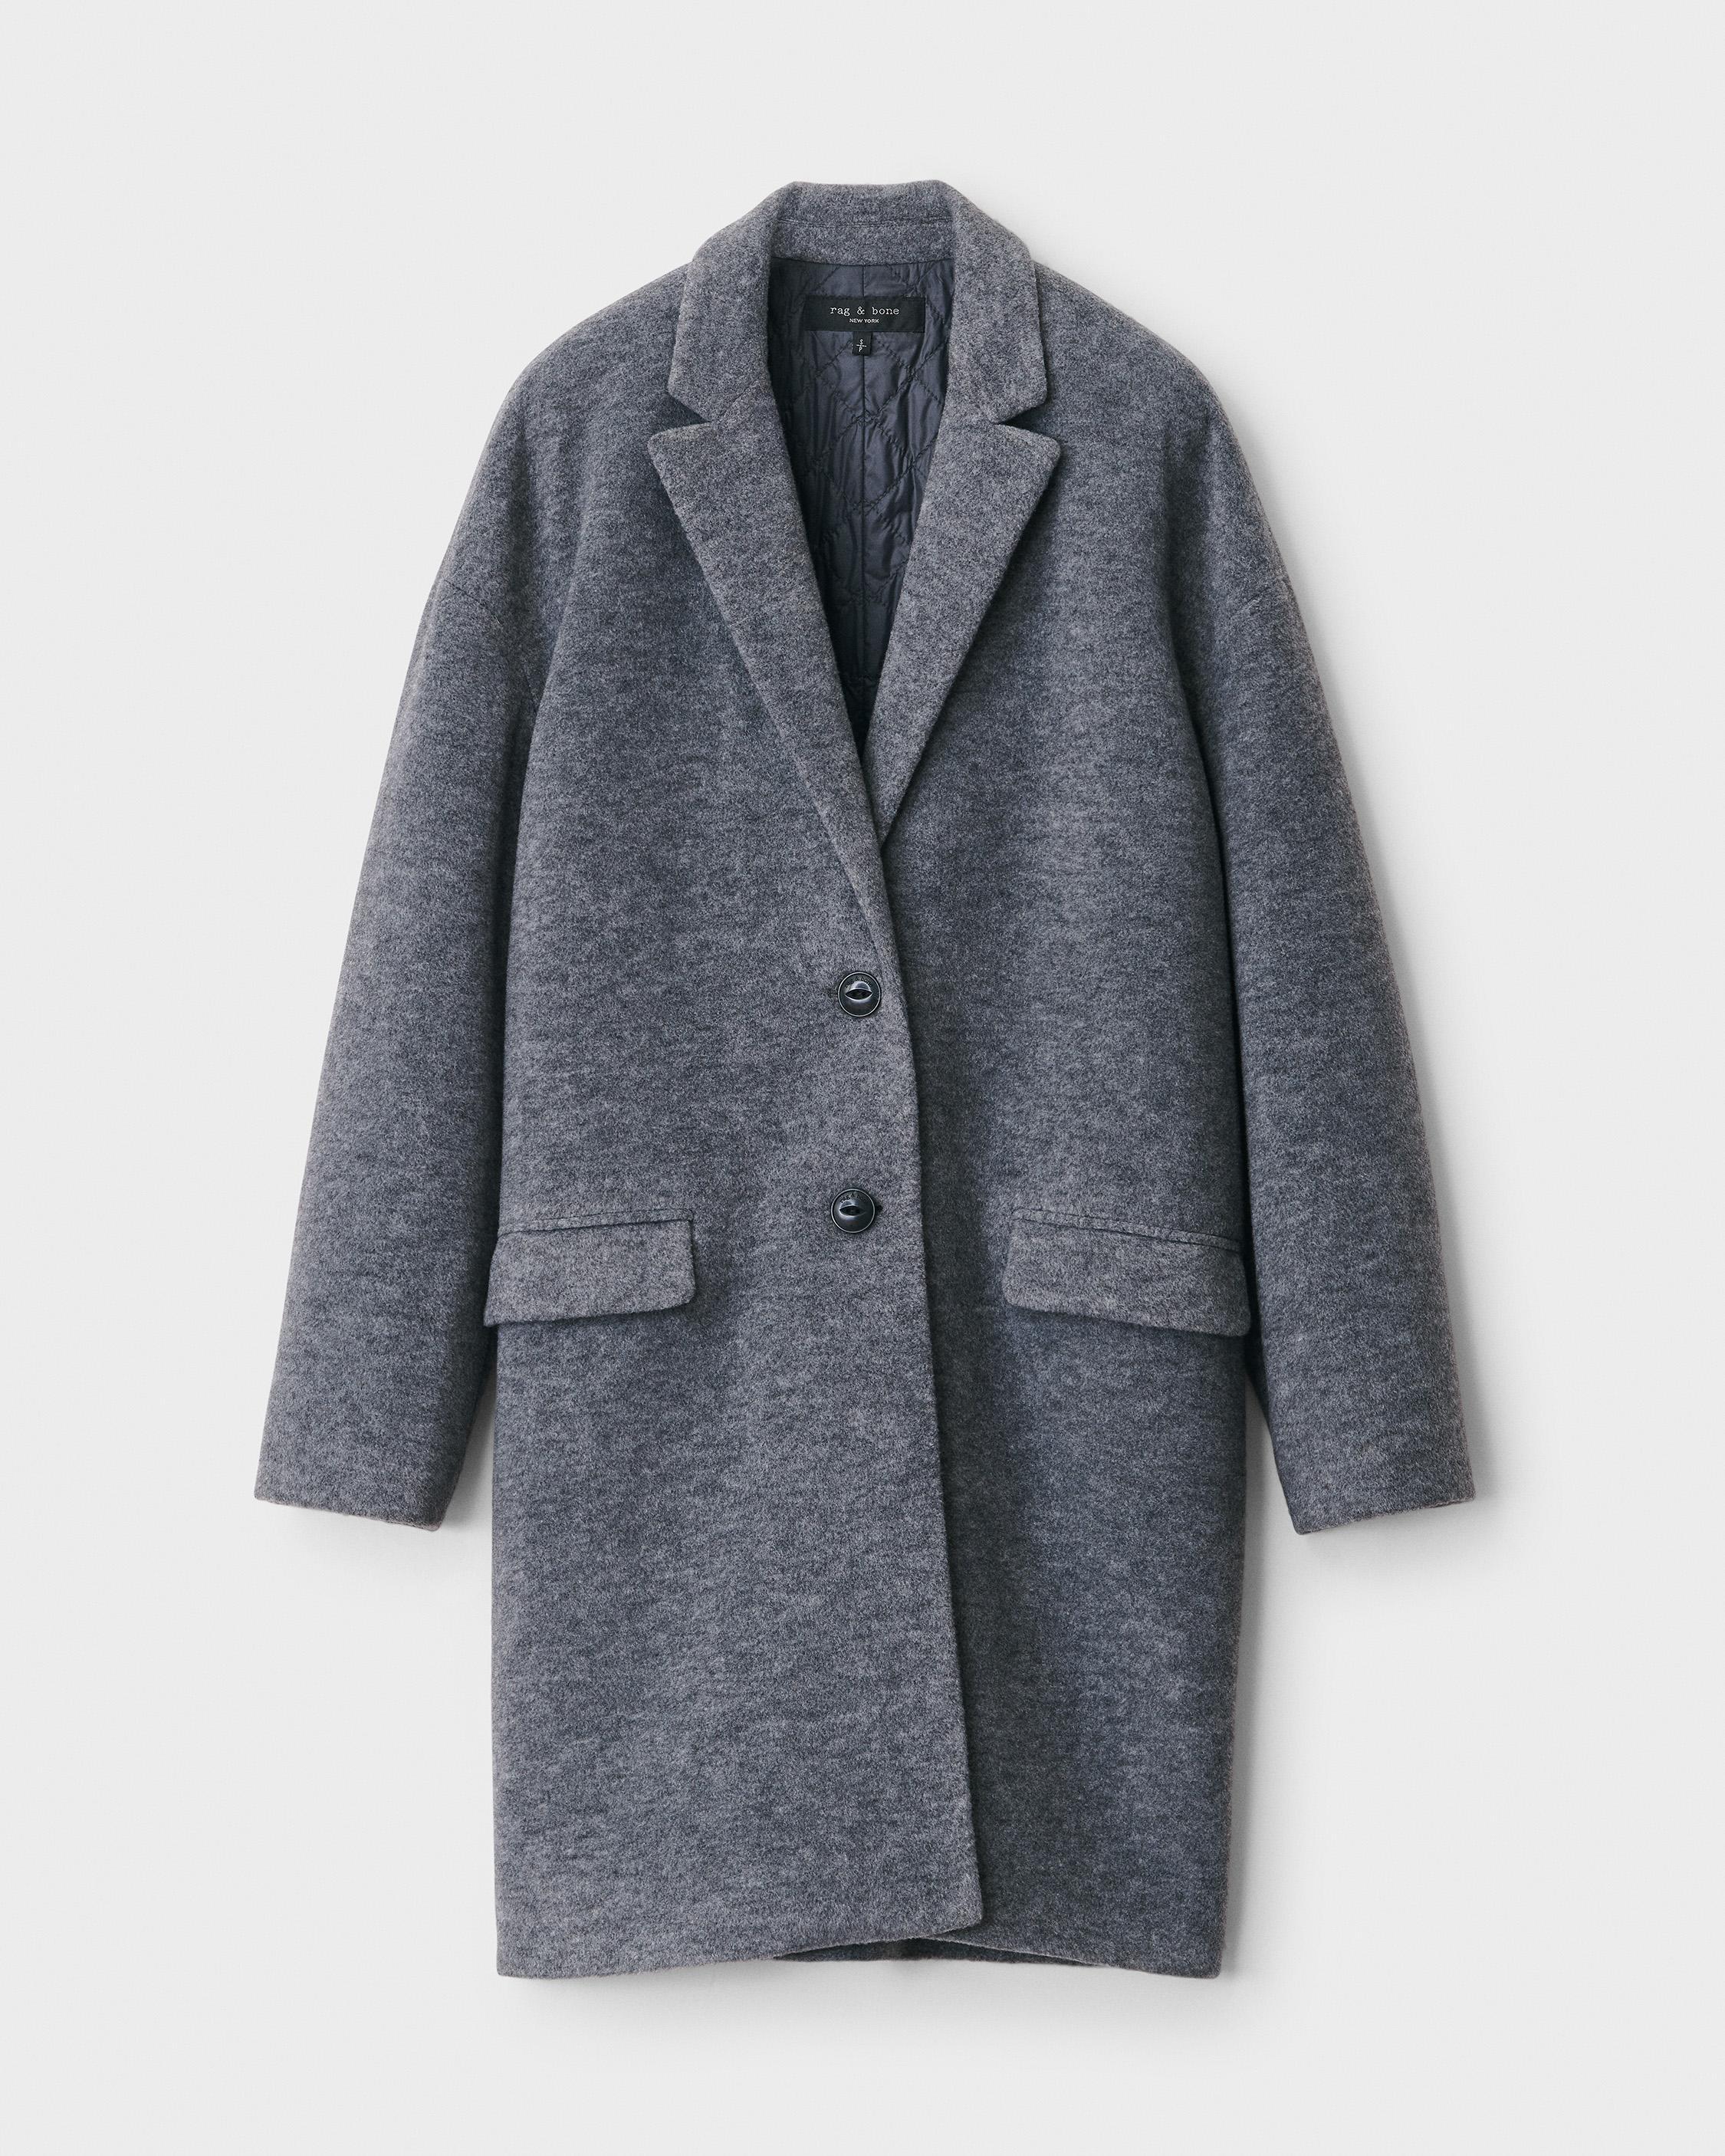 Rag & Bone Estelle Cocoon Wool Blend Coat in Light Grey (Gray) | Lyst